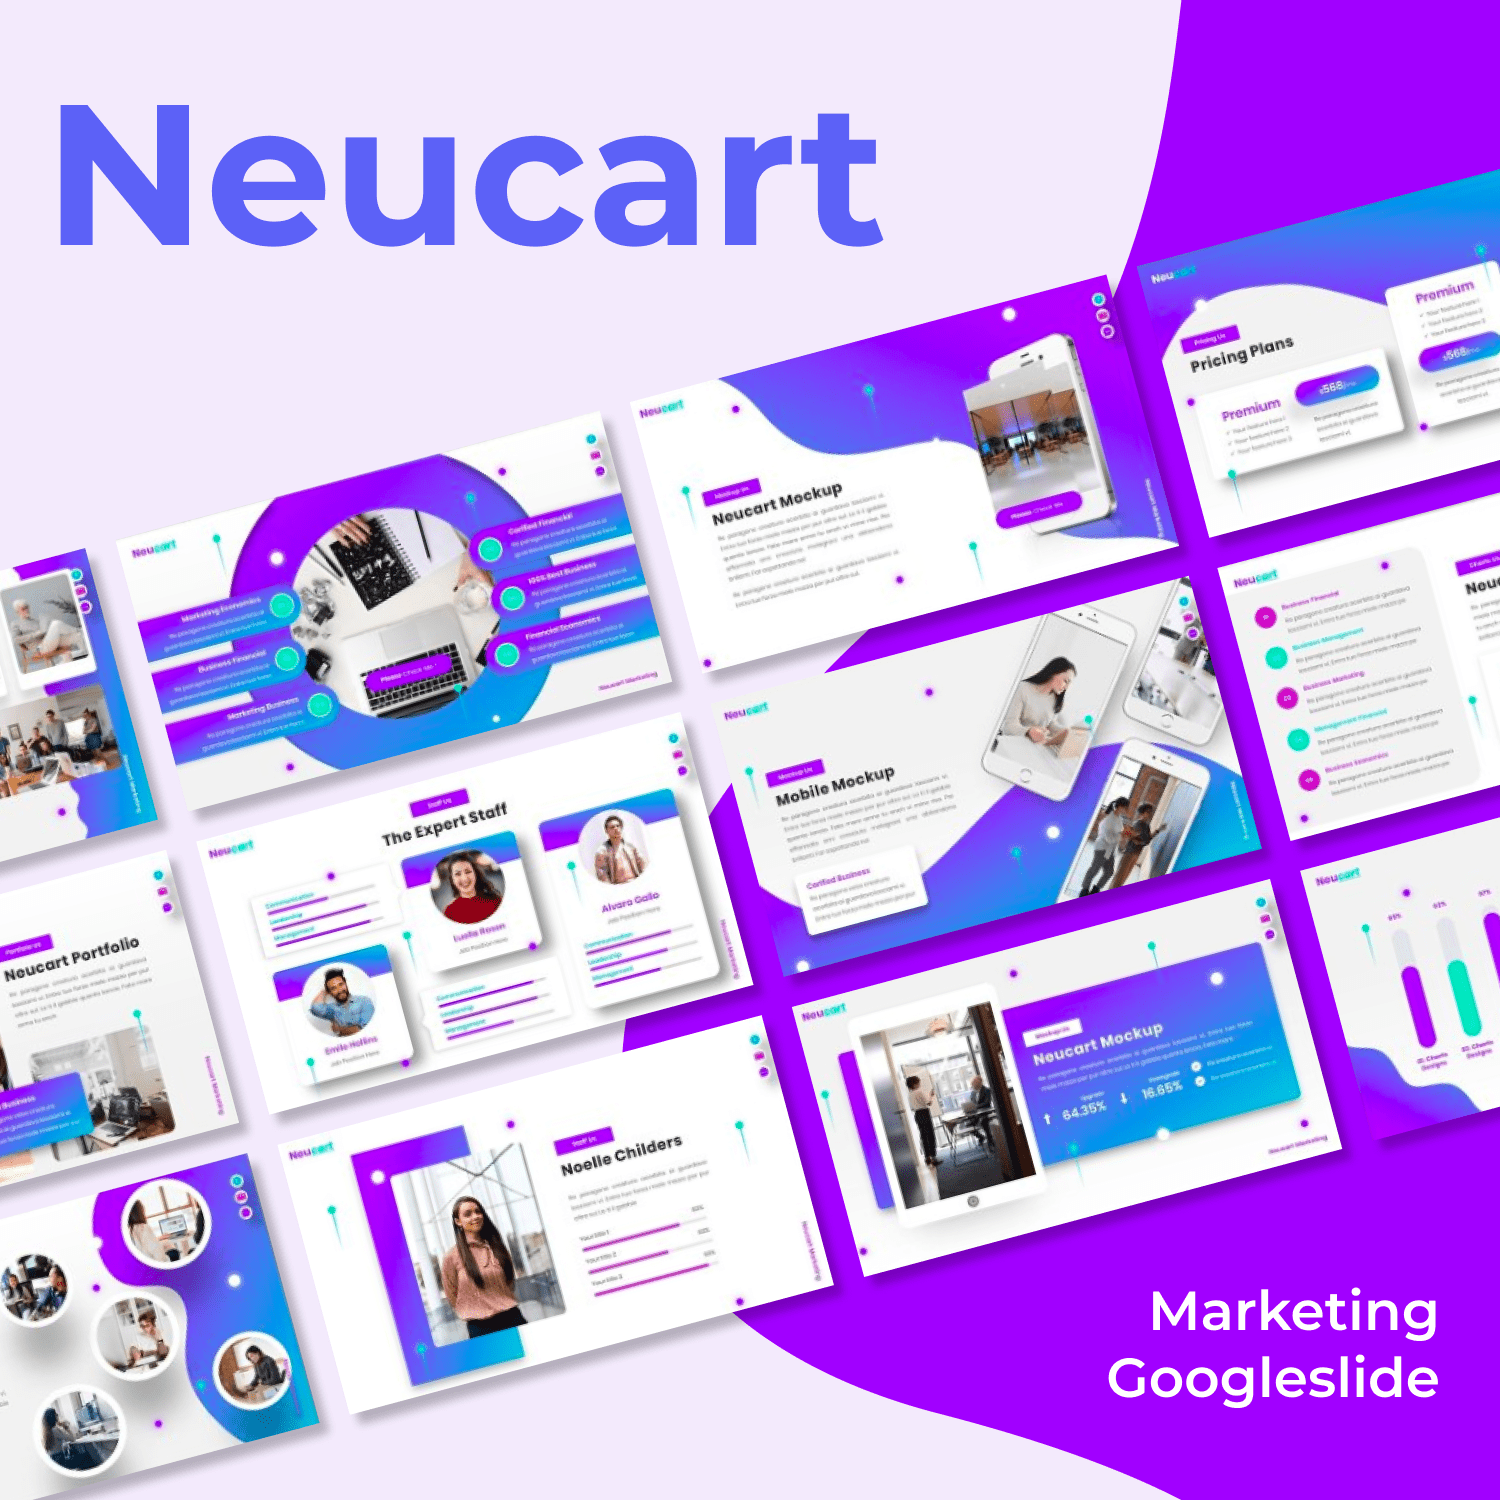 Neucart - Marketing Googleslide main cover.